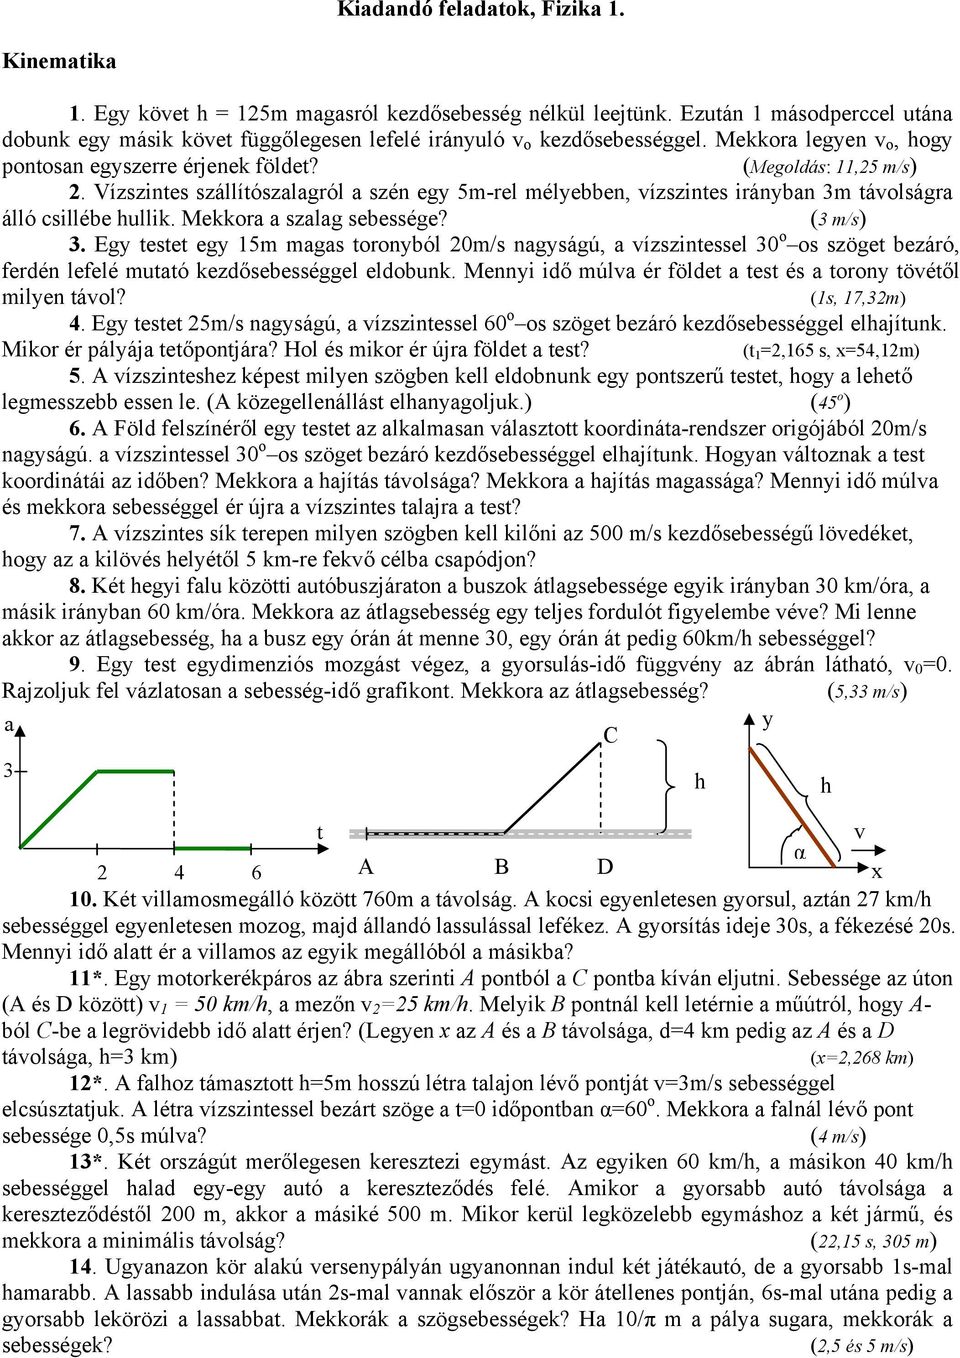 Kiadandó feladatok, Fizika 1. - PDF Ingyenes letöltés